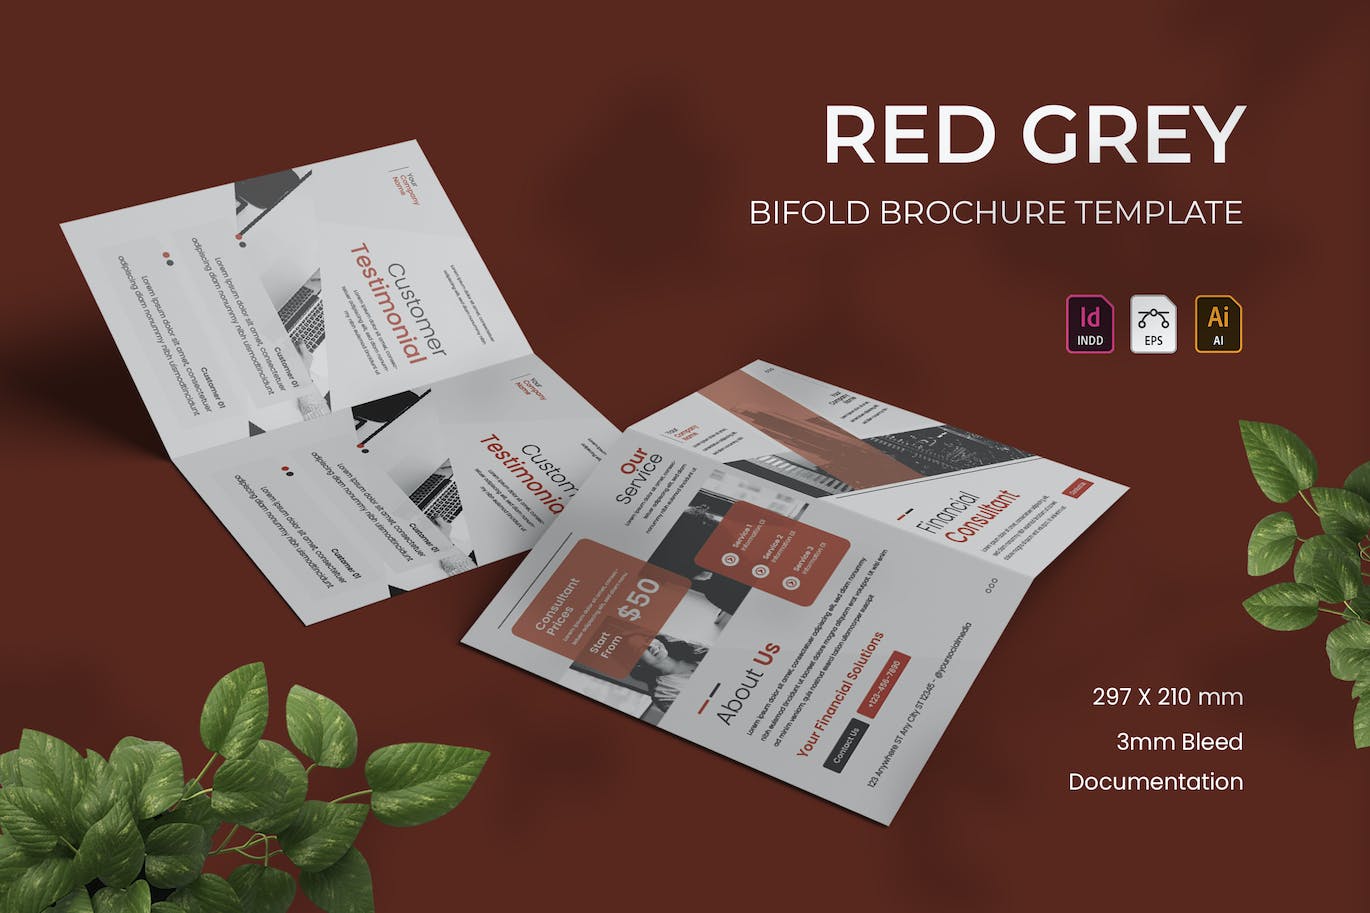 红灰色双折小册子设计模板 Red Grey – Bifold Brochure 设计素材 第1张